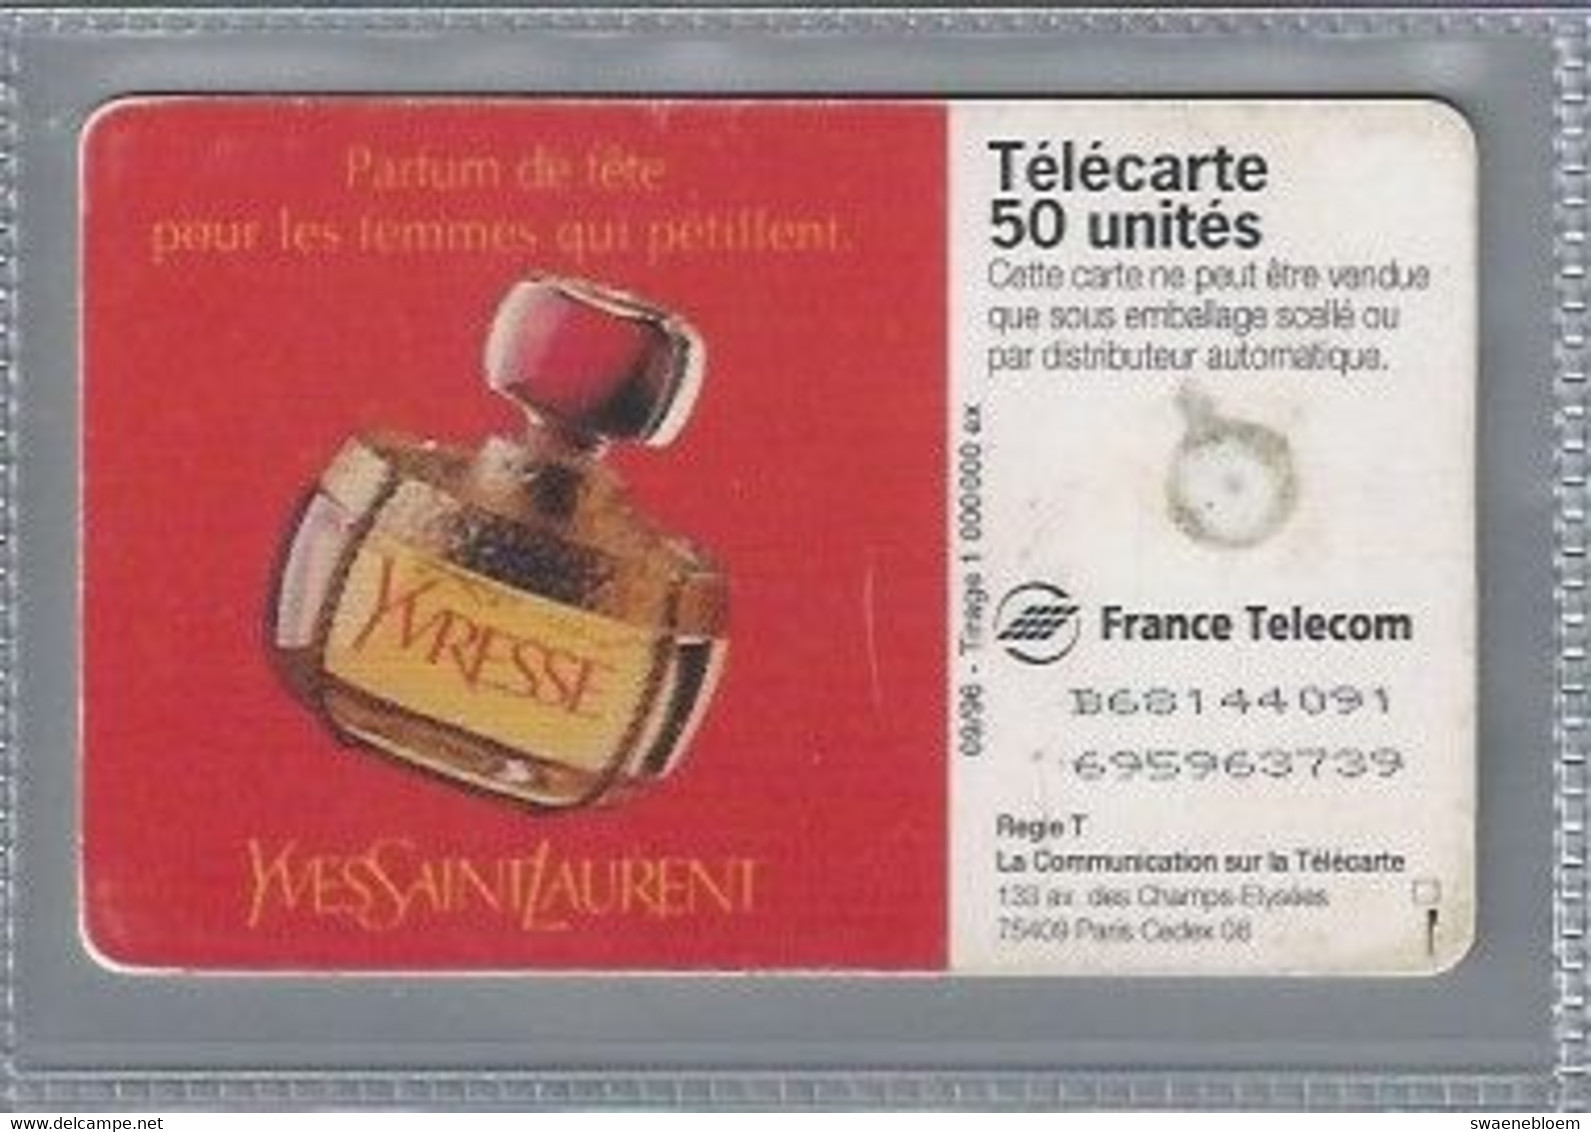 FR.- France Telecom. Télécarte. PARFUM YVRESSE. YVES SAINT LAURENT. .50 Unités. - Parfum